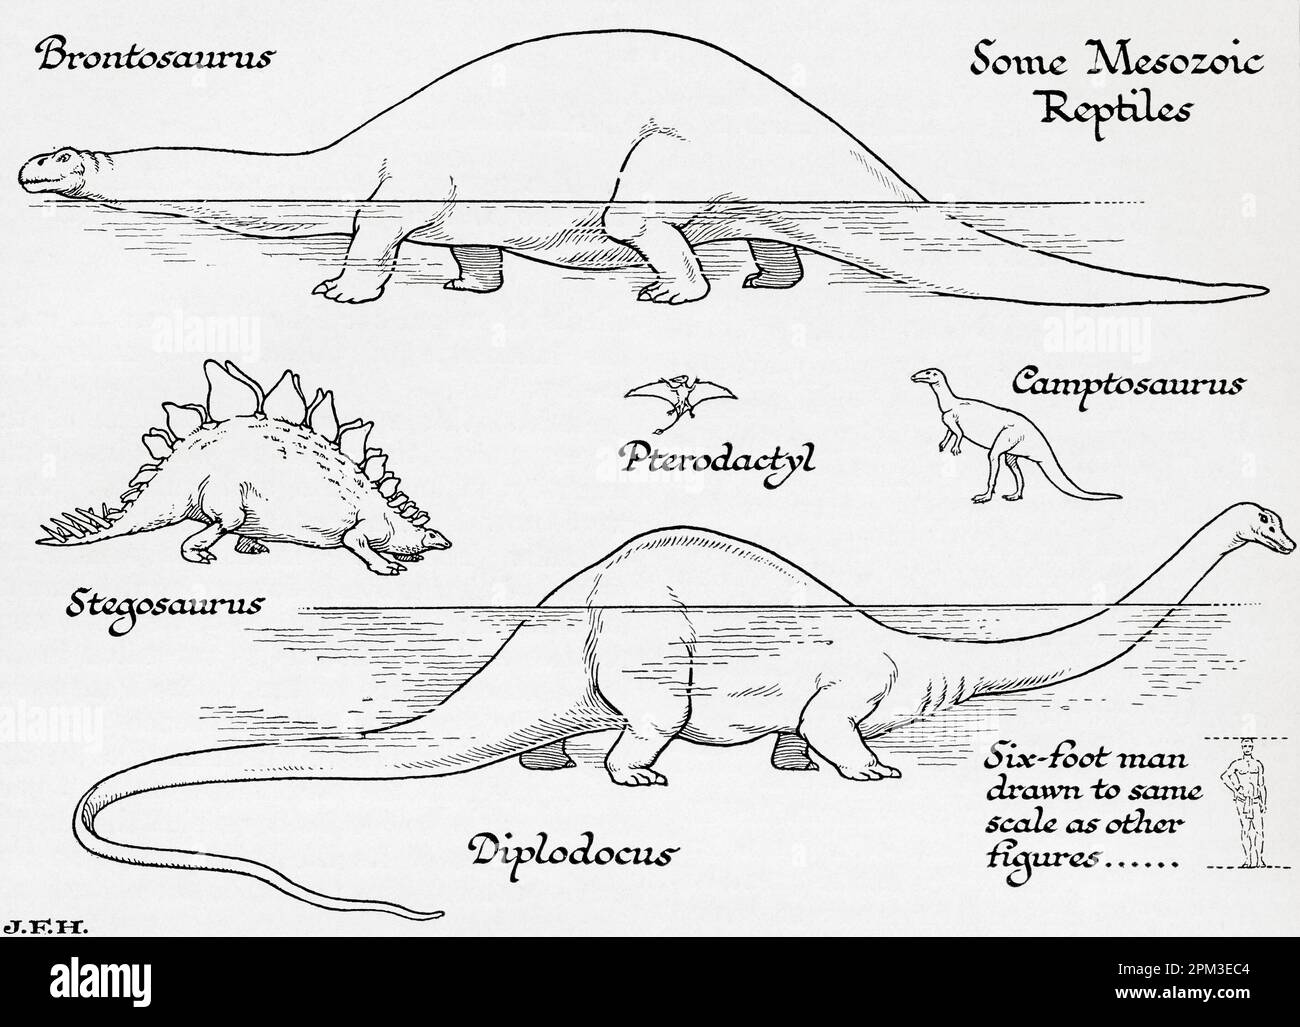 Reptiles mesozoicos. Brontosaurus, Pterodactyl, Campotosaurus, Stegosaurus, Diplodocus. Se muestra en el diagrama un hombre de seis pies dibujado a la misma escala que otras figuras. Del libro Esquema de la Historia por H.G. Wells, publicado en 1920. Foto de stock